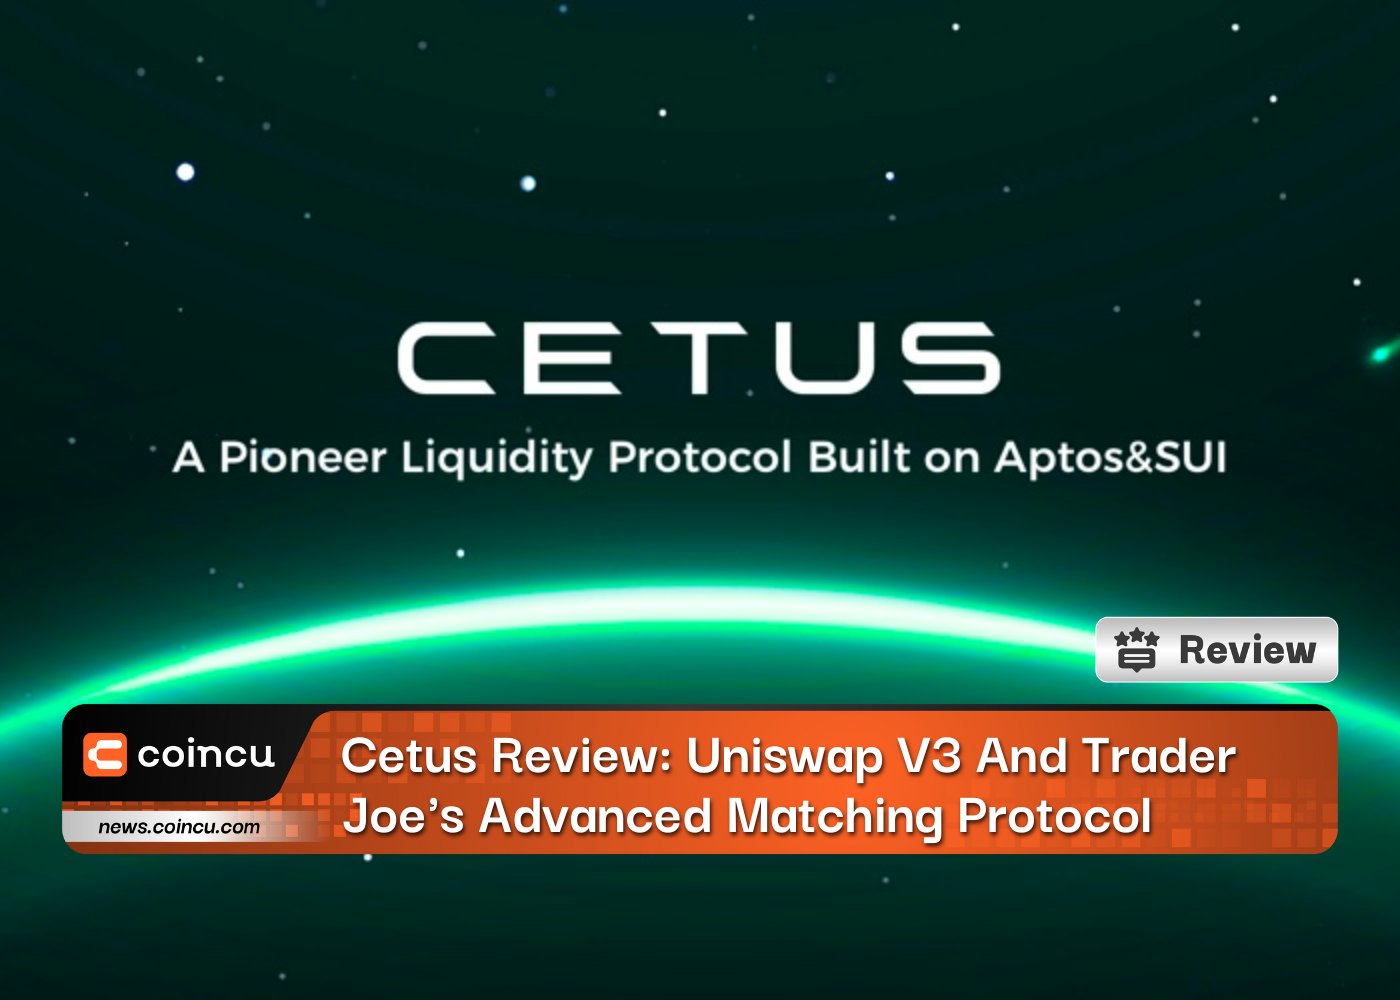 Обзор Cetus: Uniswap V3 и расширенный протокол сопоставления Trader Joe